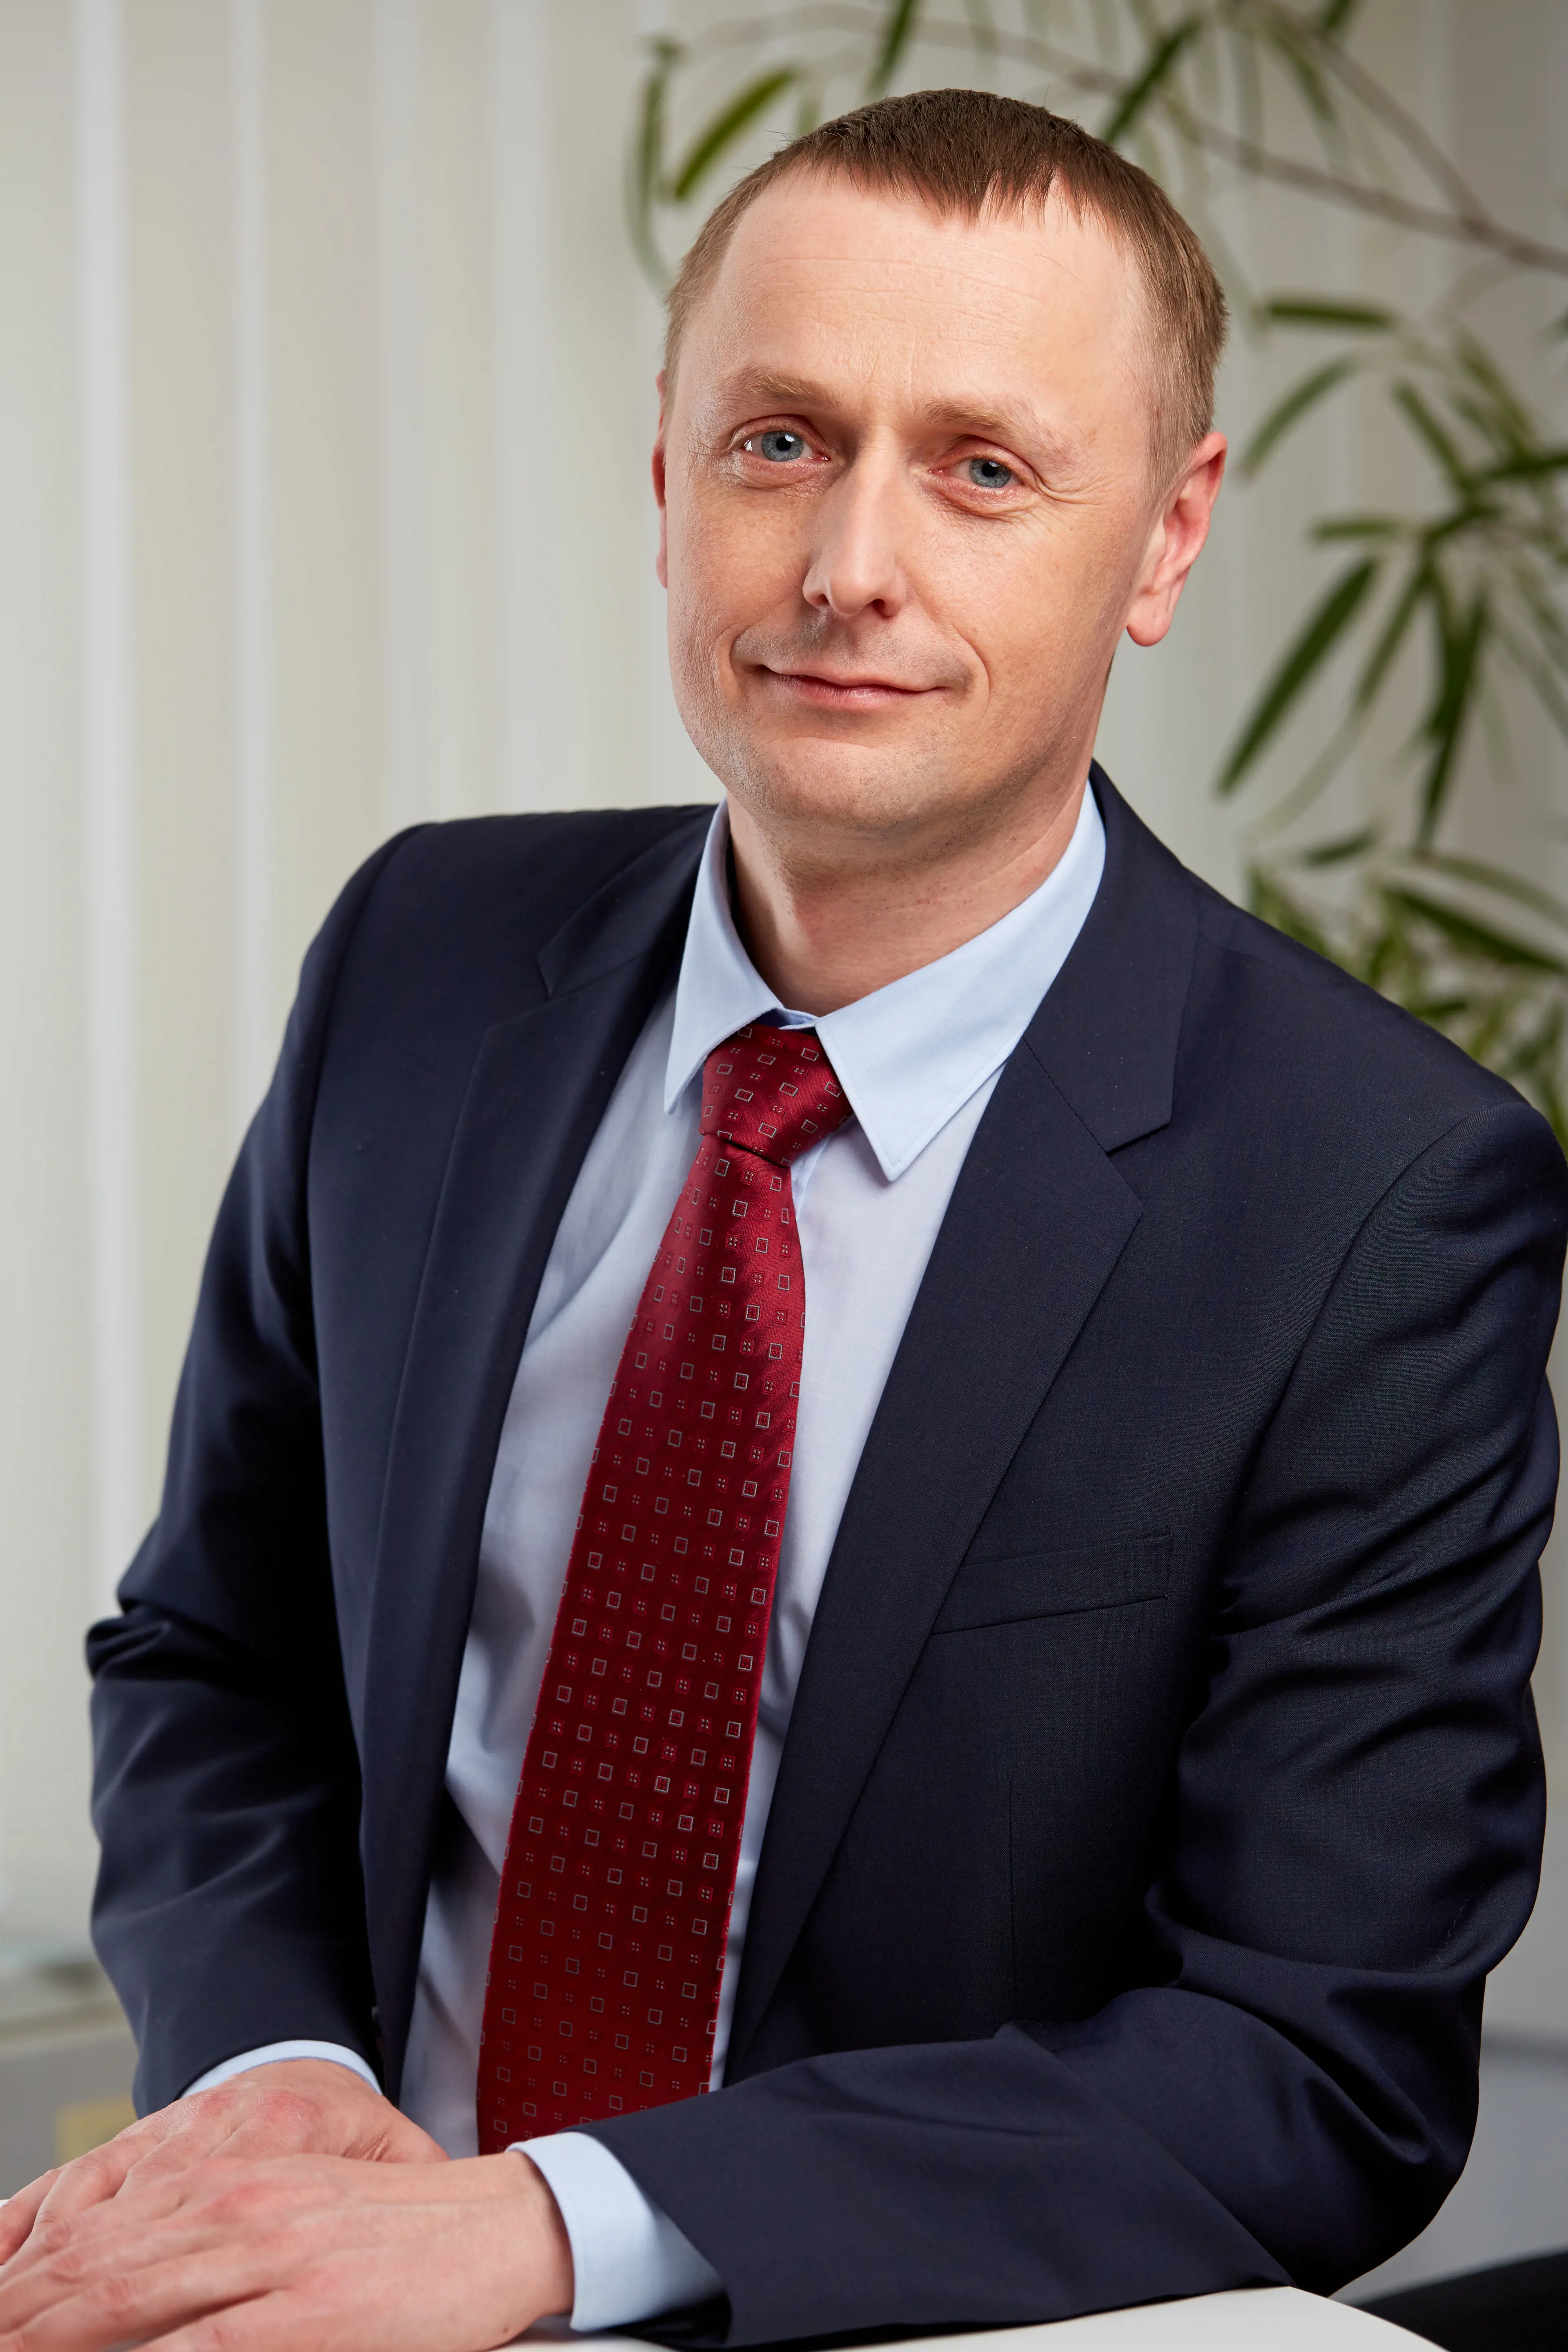 Pawel Szewczyk is the new CEO of FCC Polska Sp. z o.o. 